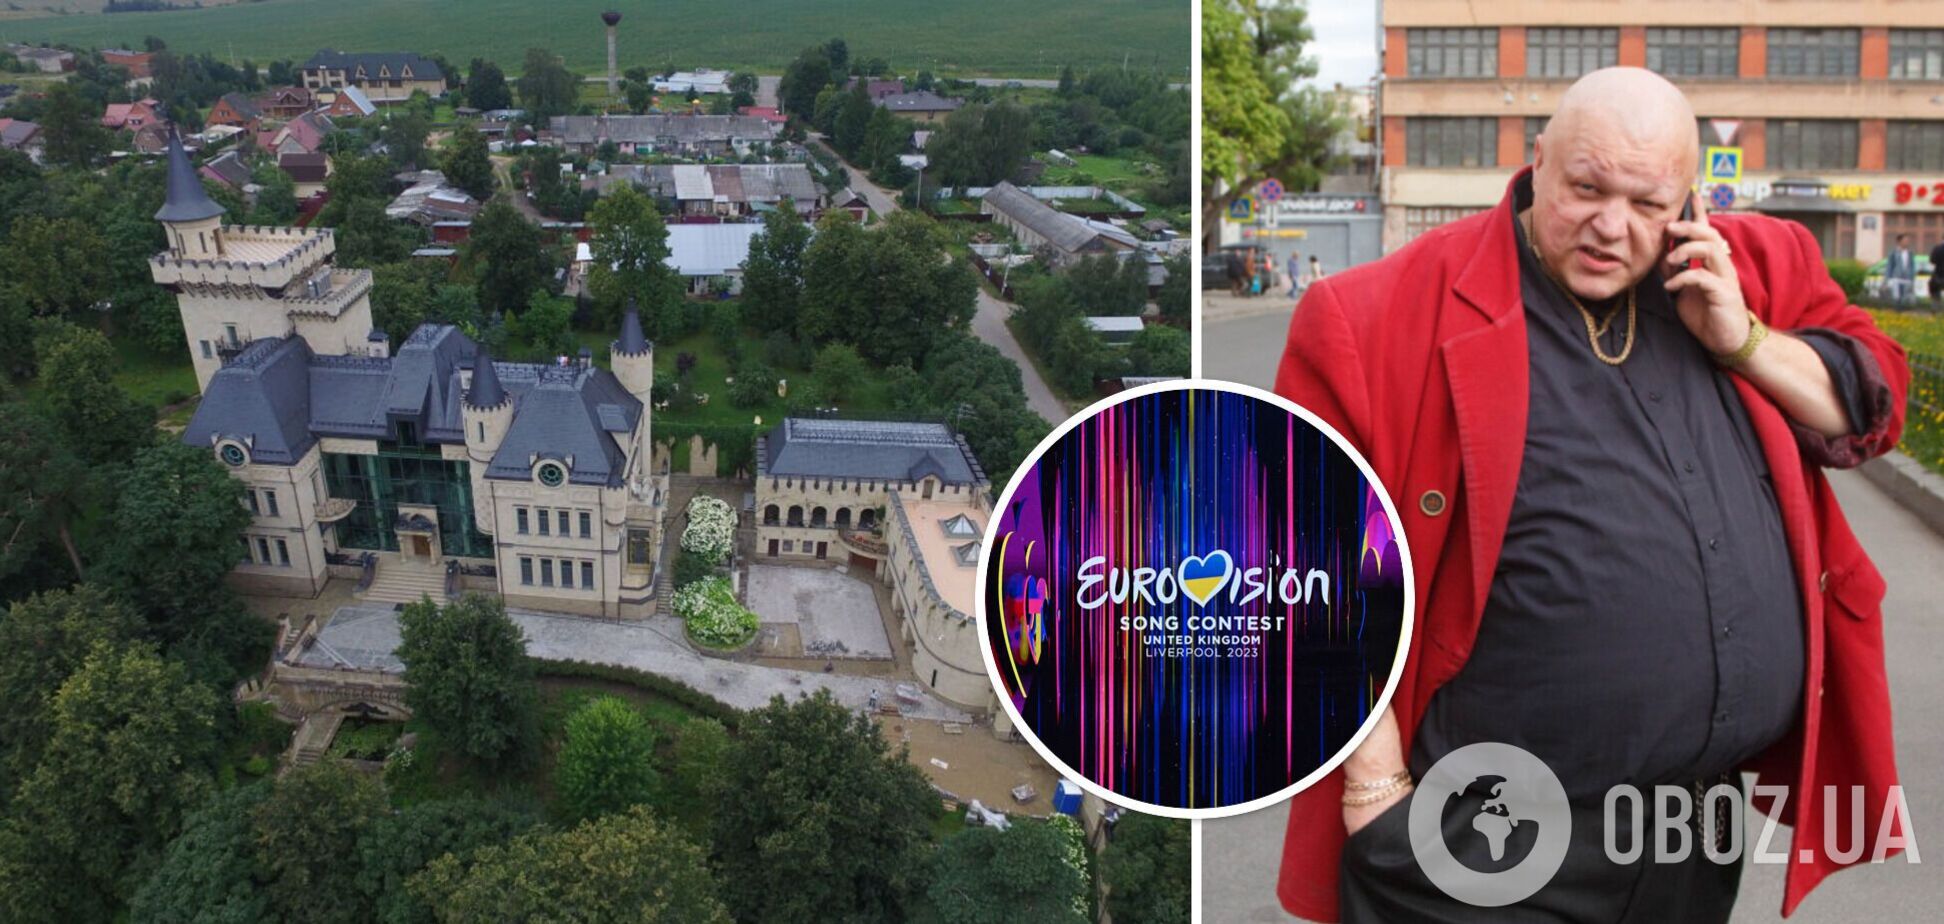 'Руссовидение': путинист Стас Барецкий планирует провести аналог Евровидения в замке Пугачевой и Галкина